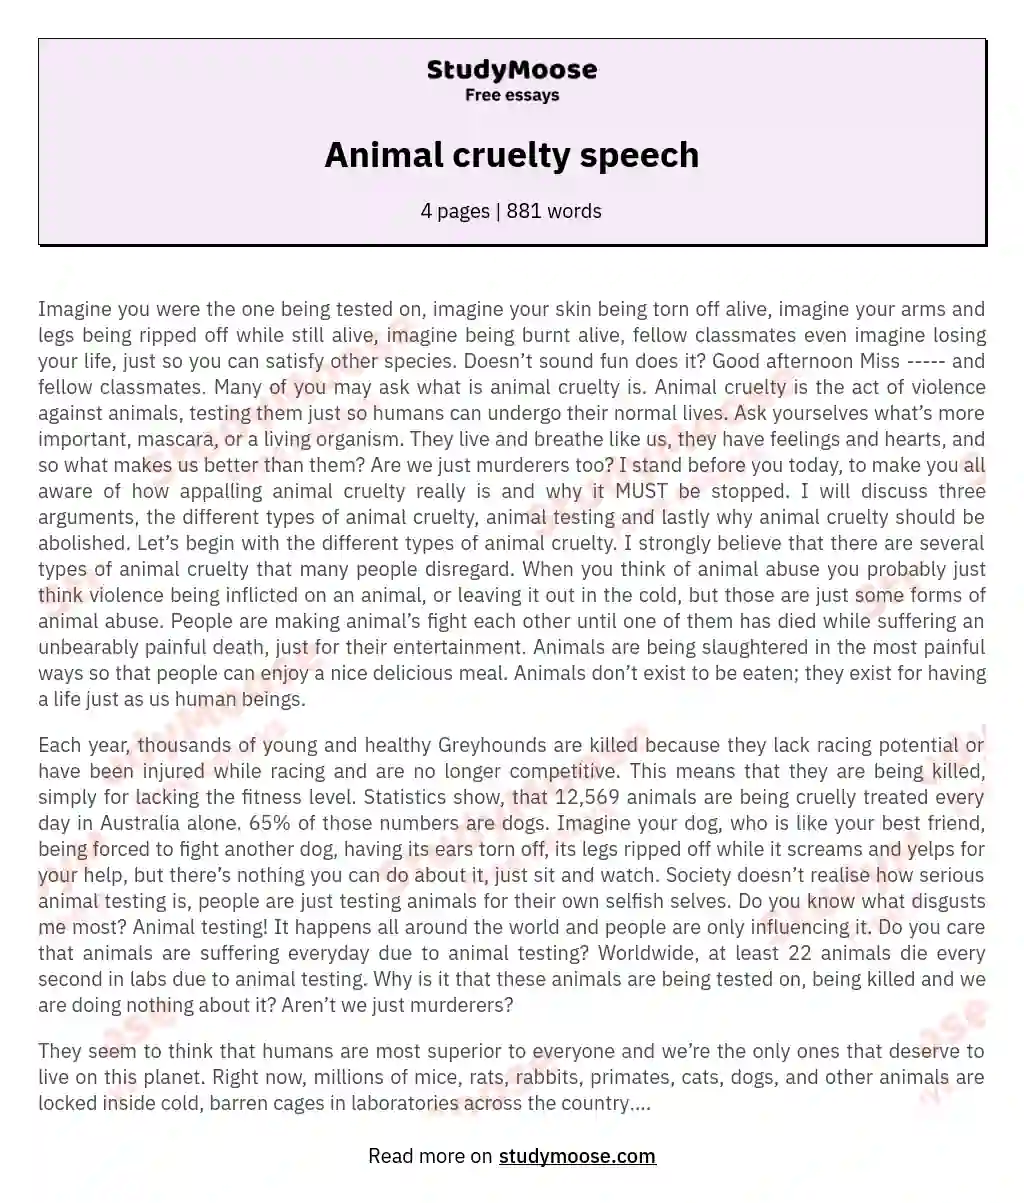 Animal cruelty speech essay